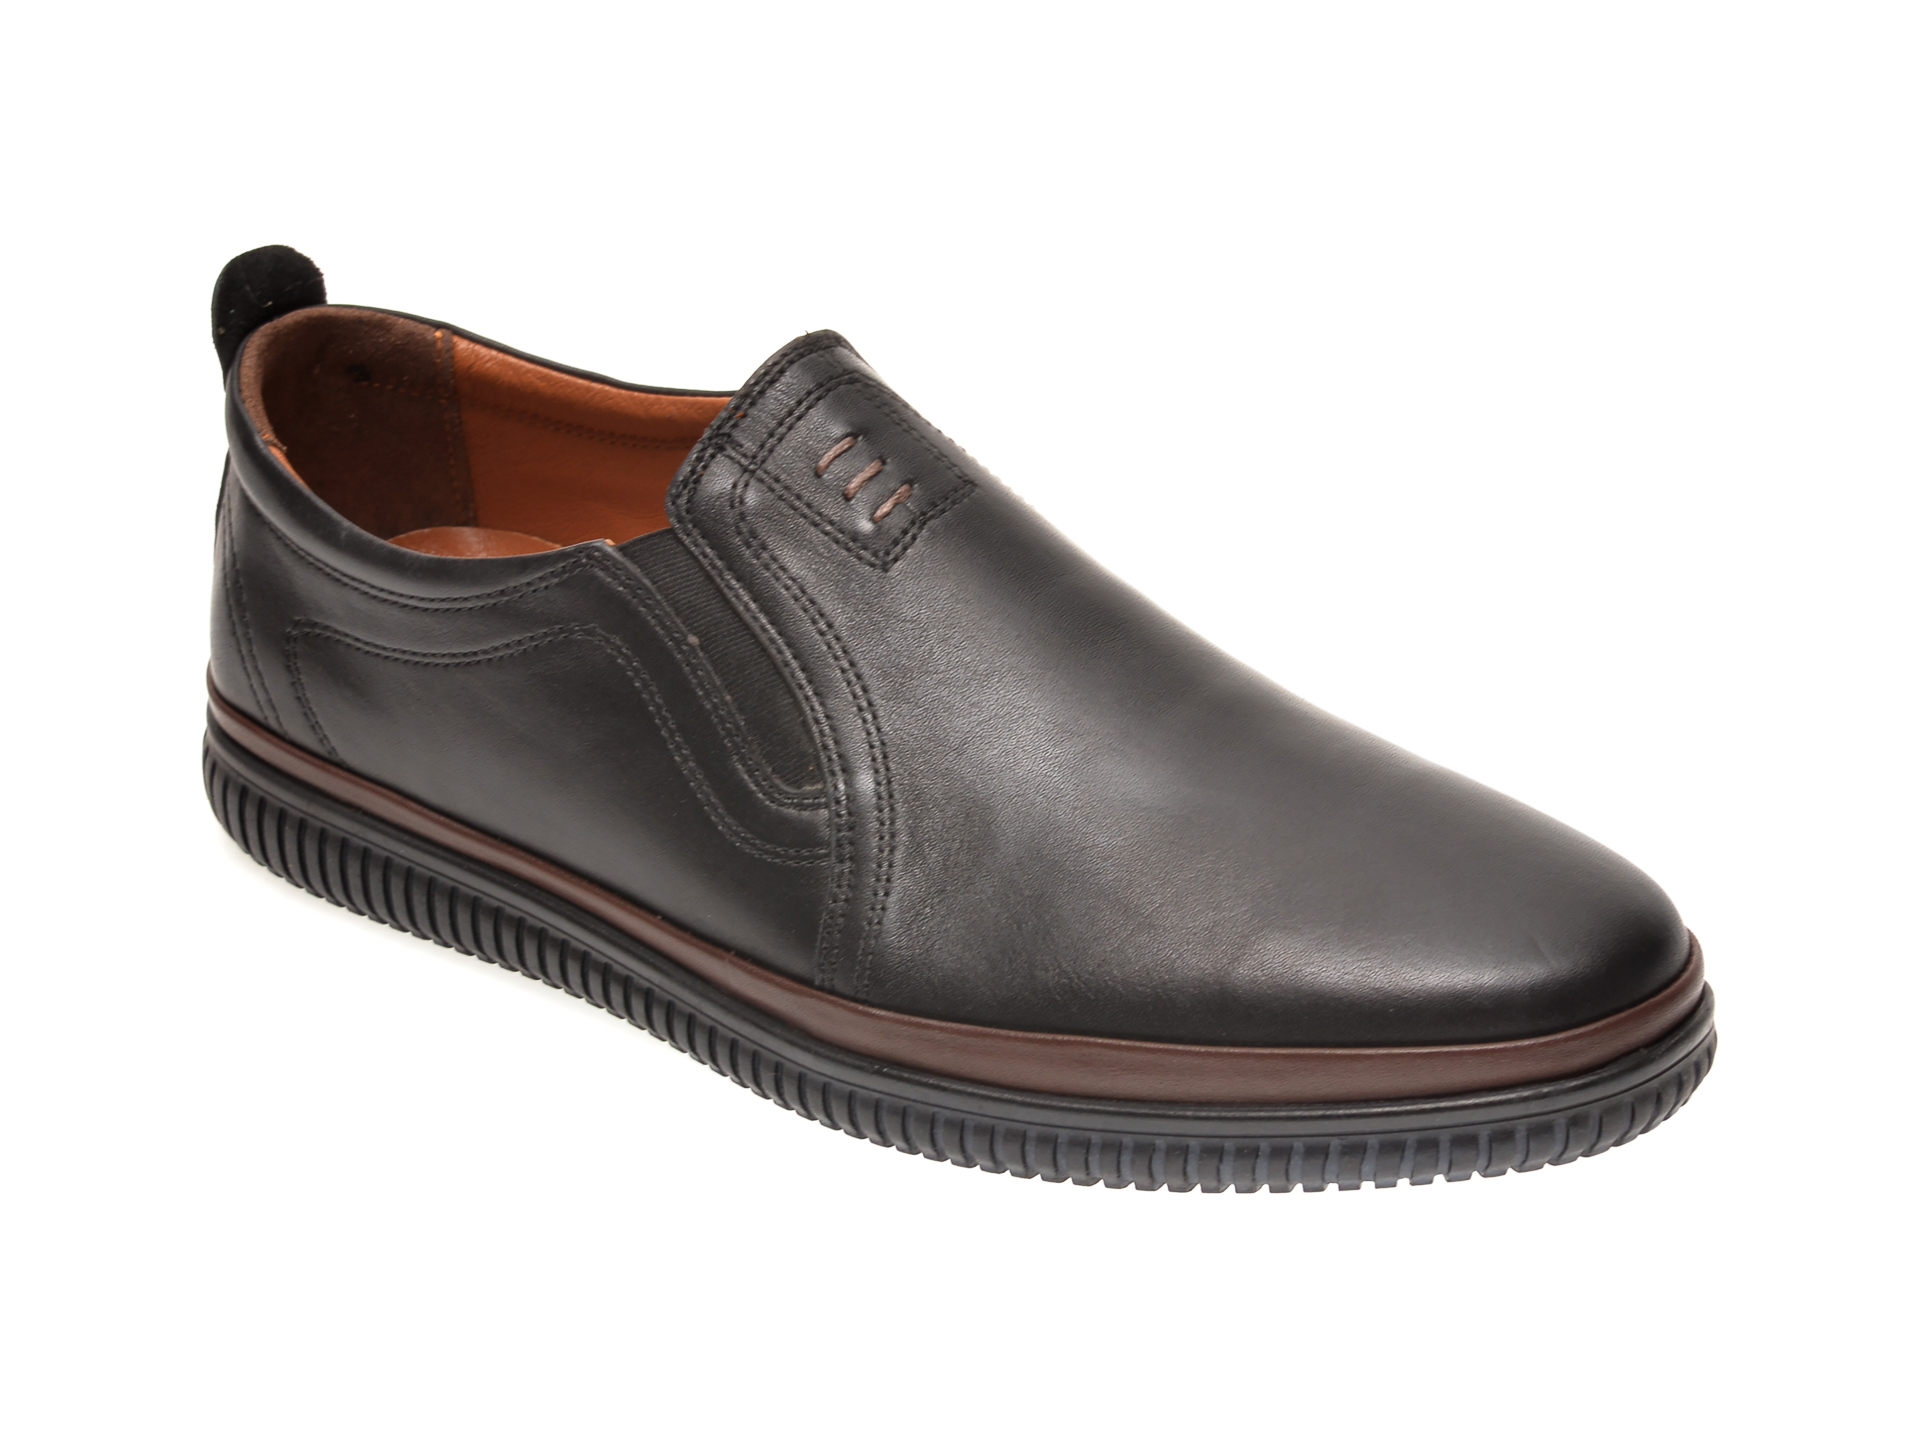 Pantofi OTTER negri, M5702, din piele naturala Otter poza reduceri 2021